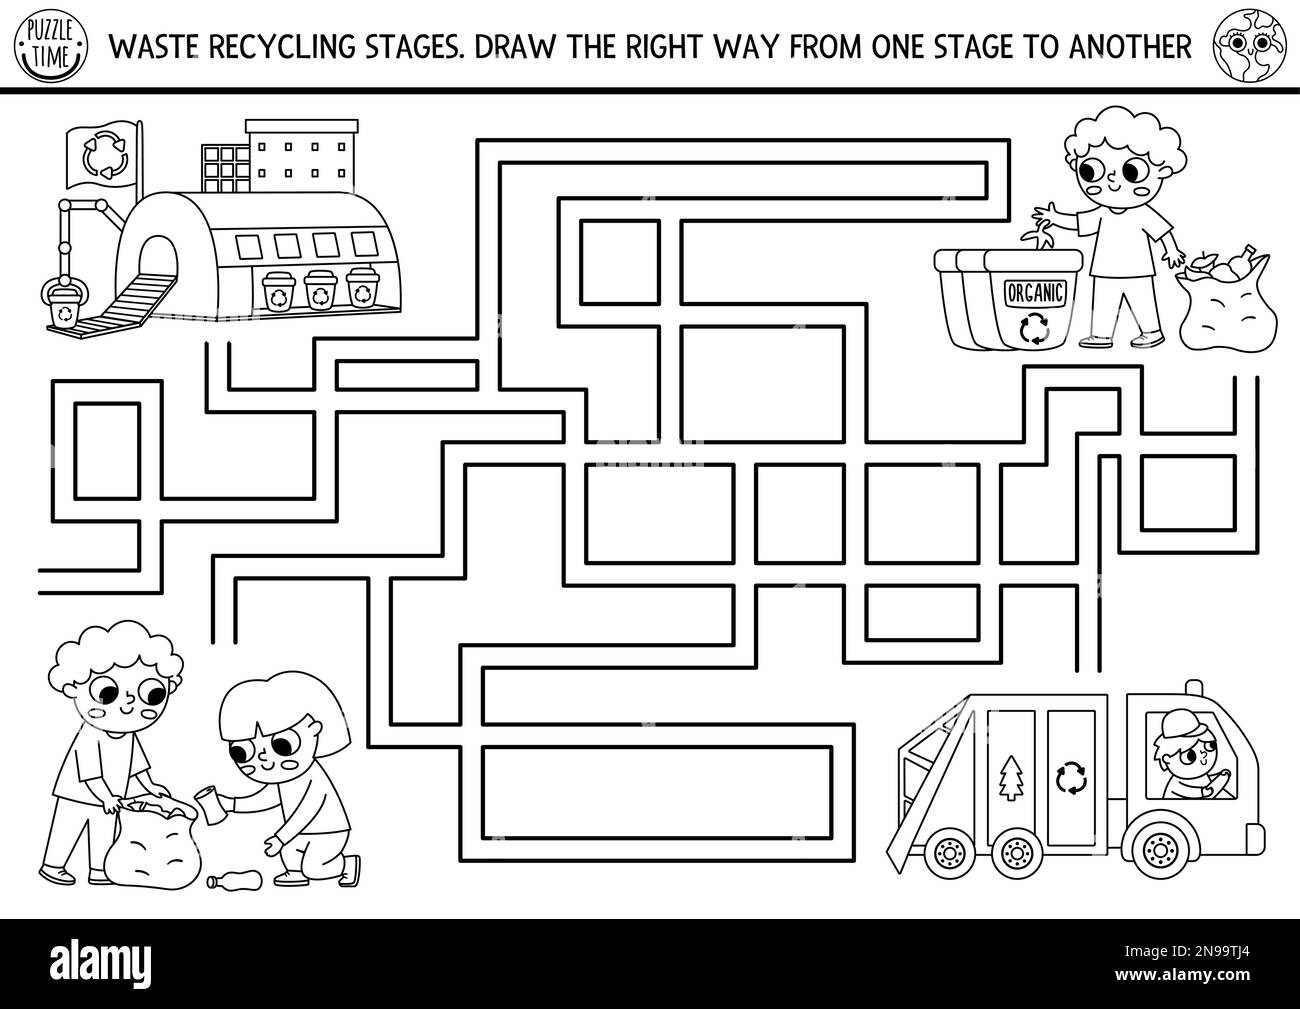 Labyrinth-Spiel für Kinder. Verbindung zwischen Abfall und Mülleimer.  Themenaktivitäten zur Mülltrennung für Kleinkinder und Kinder  Stock-Vektorgrafik von ©ksuklein 255978362